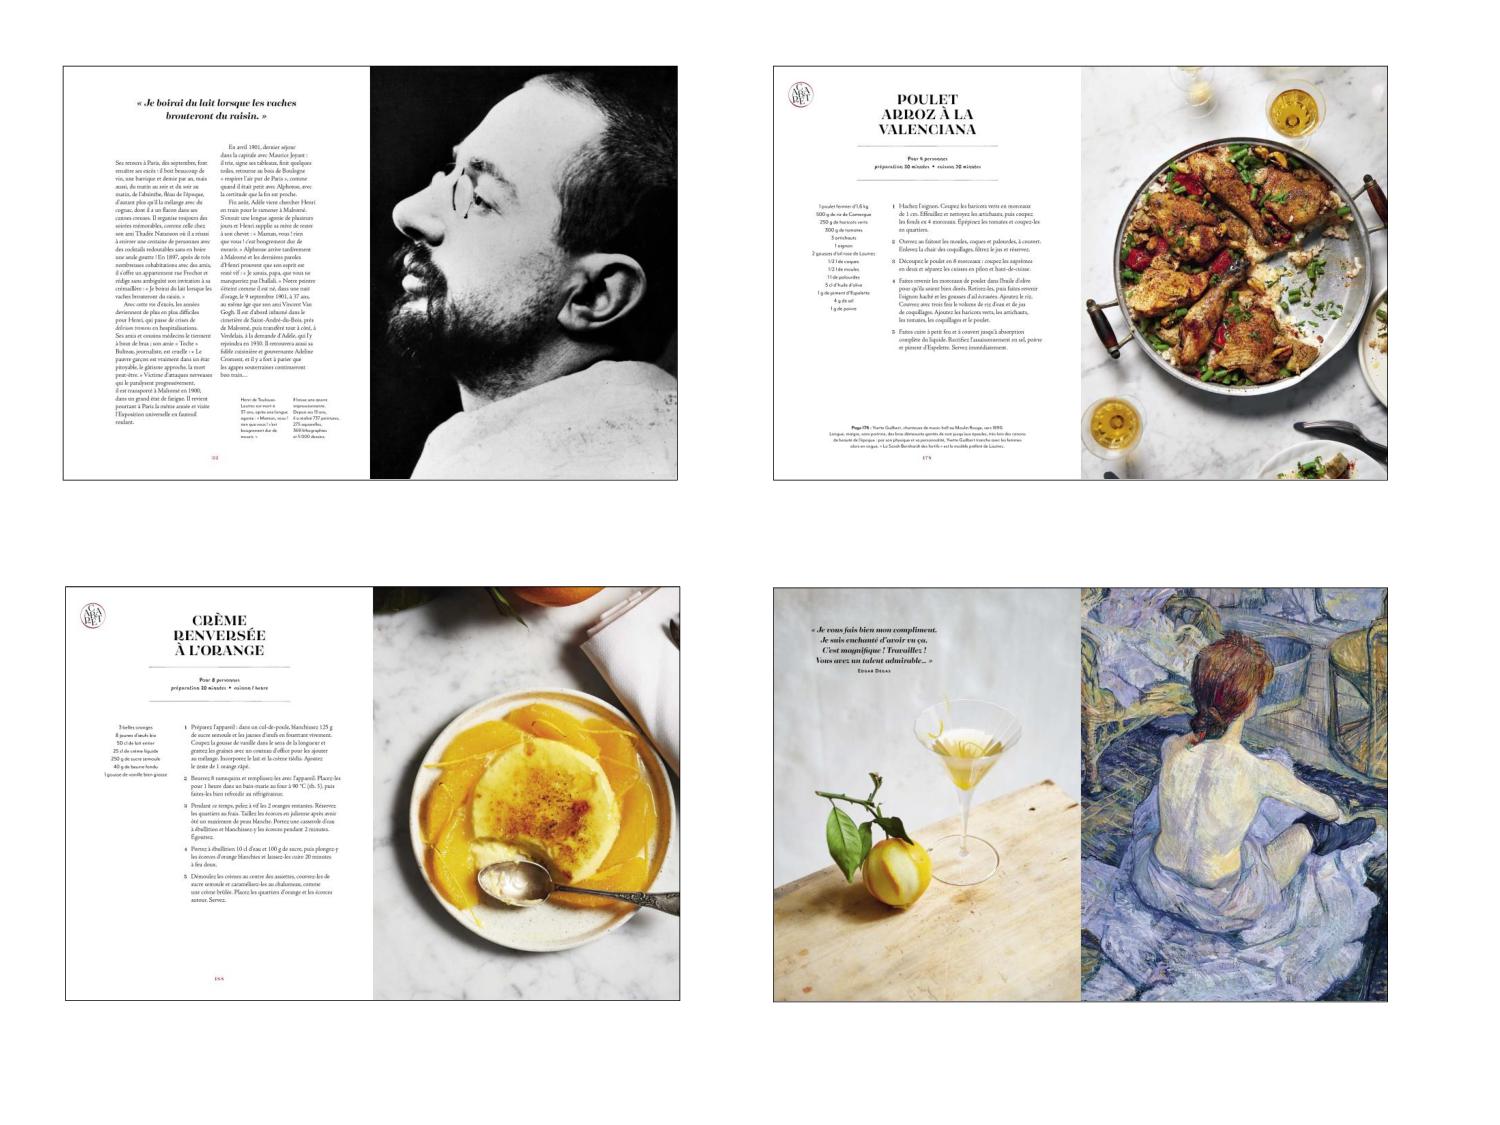 C_Users_Leevan_Documents_Stage - A transferer_Carnets de cuisine TL_Les carnets de cuisine de Toulouse Lautrec - Copie3